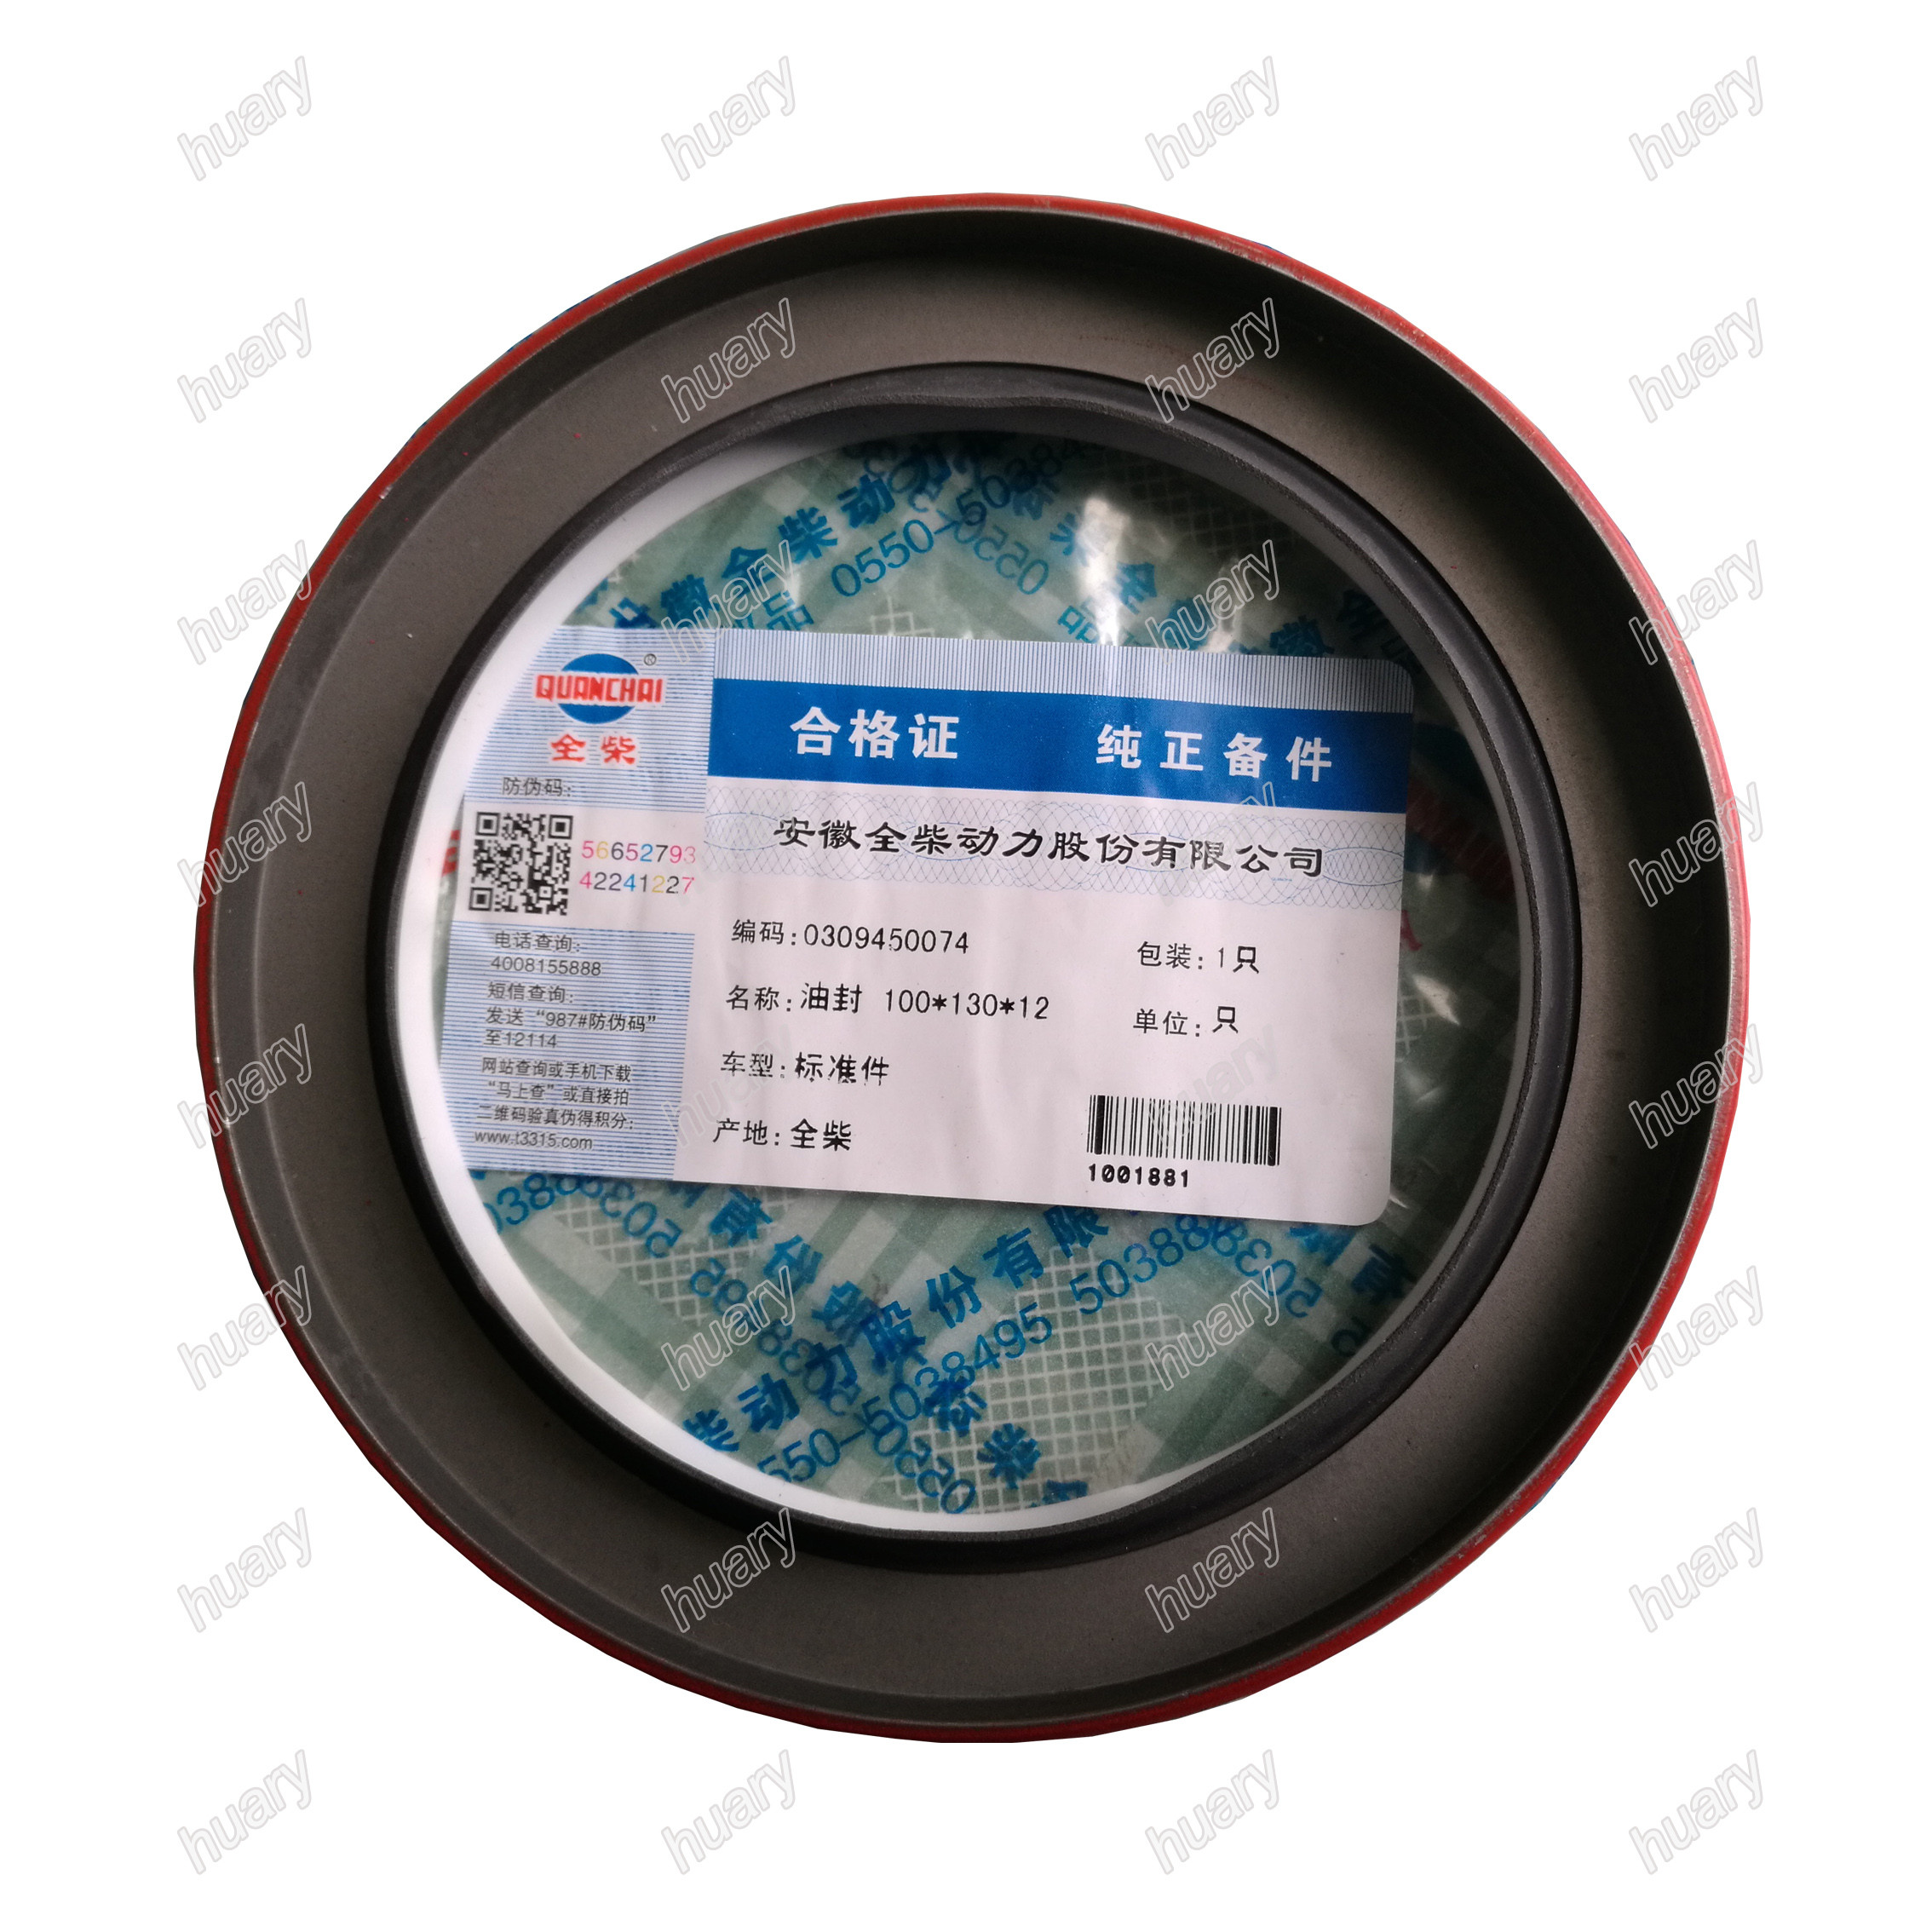 Quanchai QC490 diesel engine spare parts 0309450074 crankshaft oil seal front